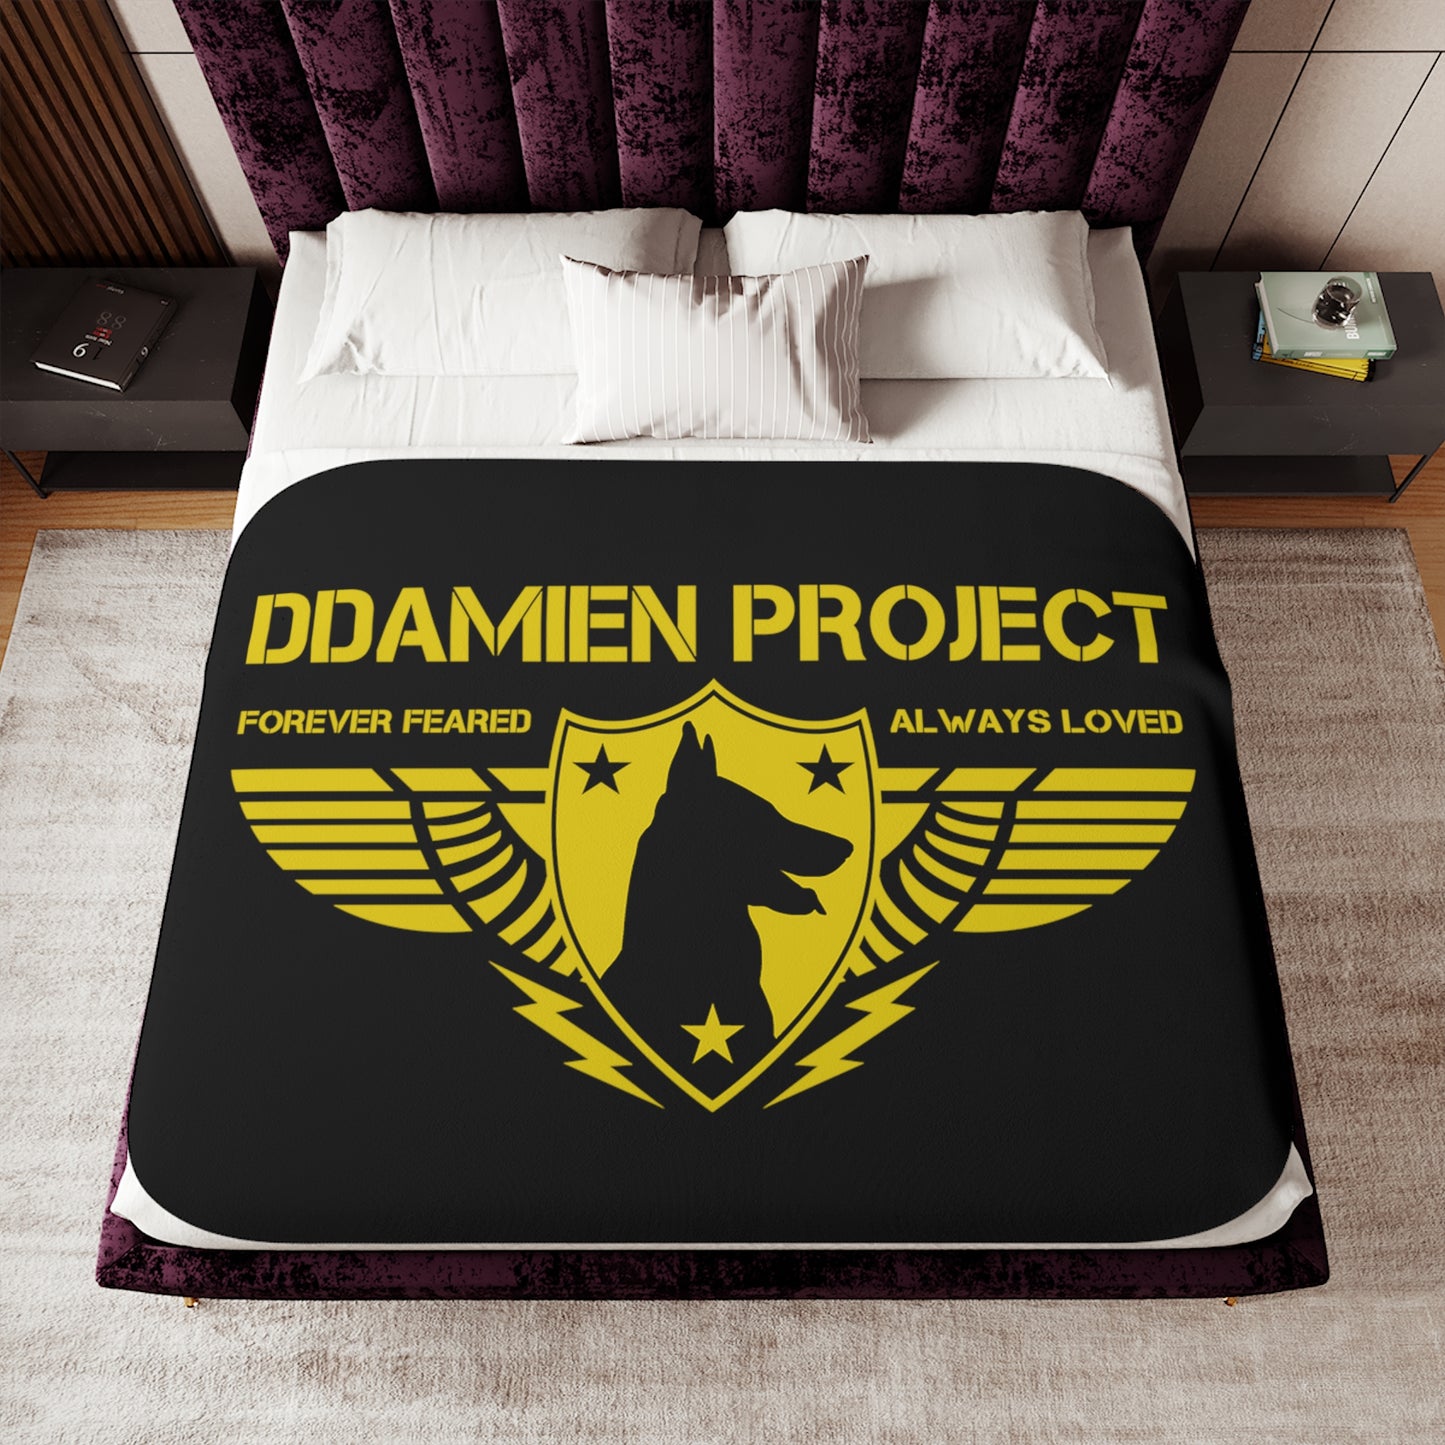 Ddamien Project Sherpa Blanket